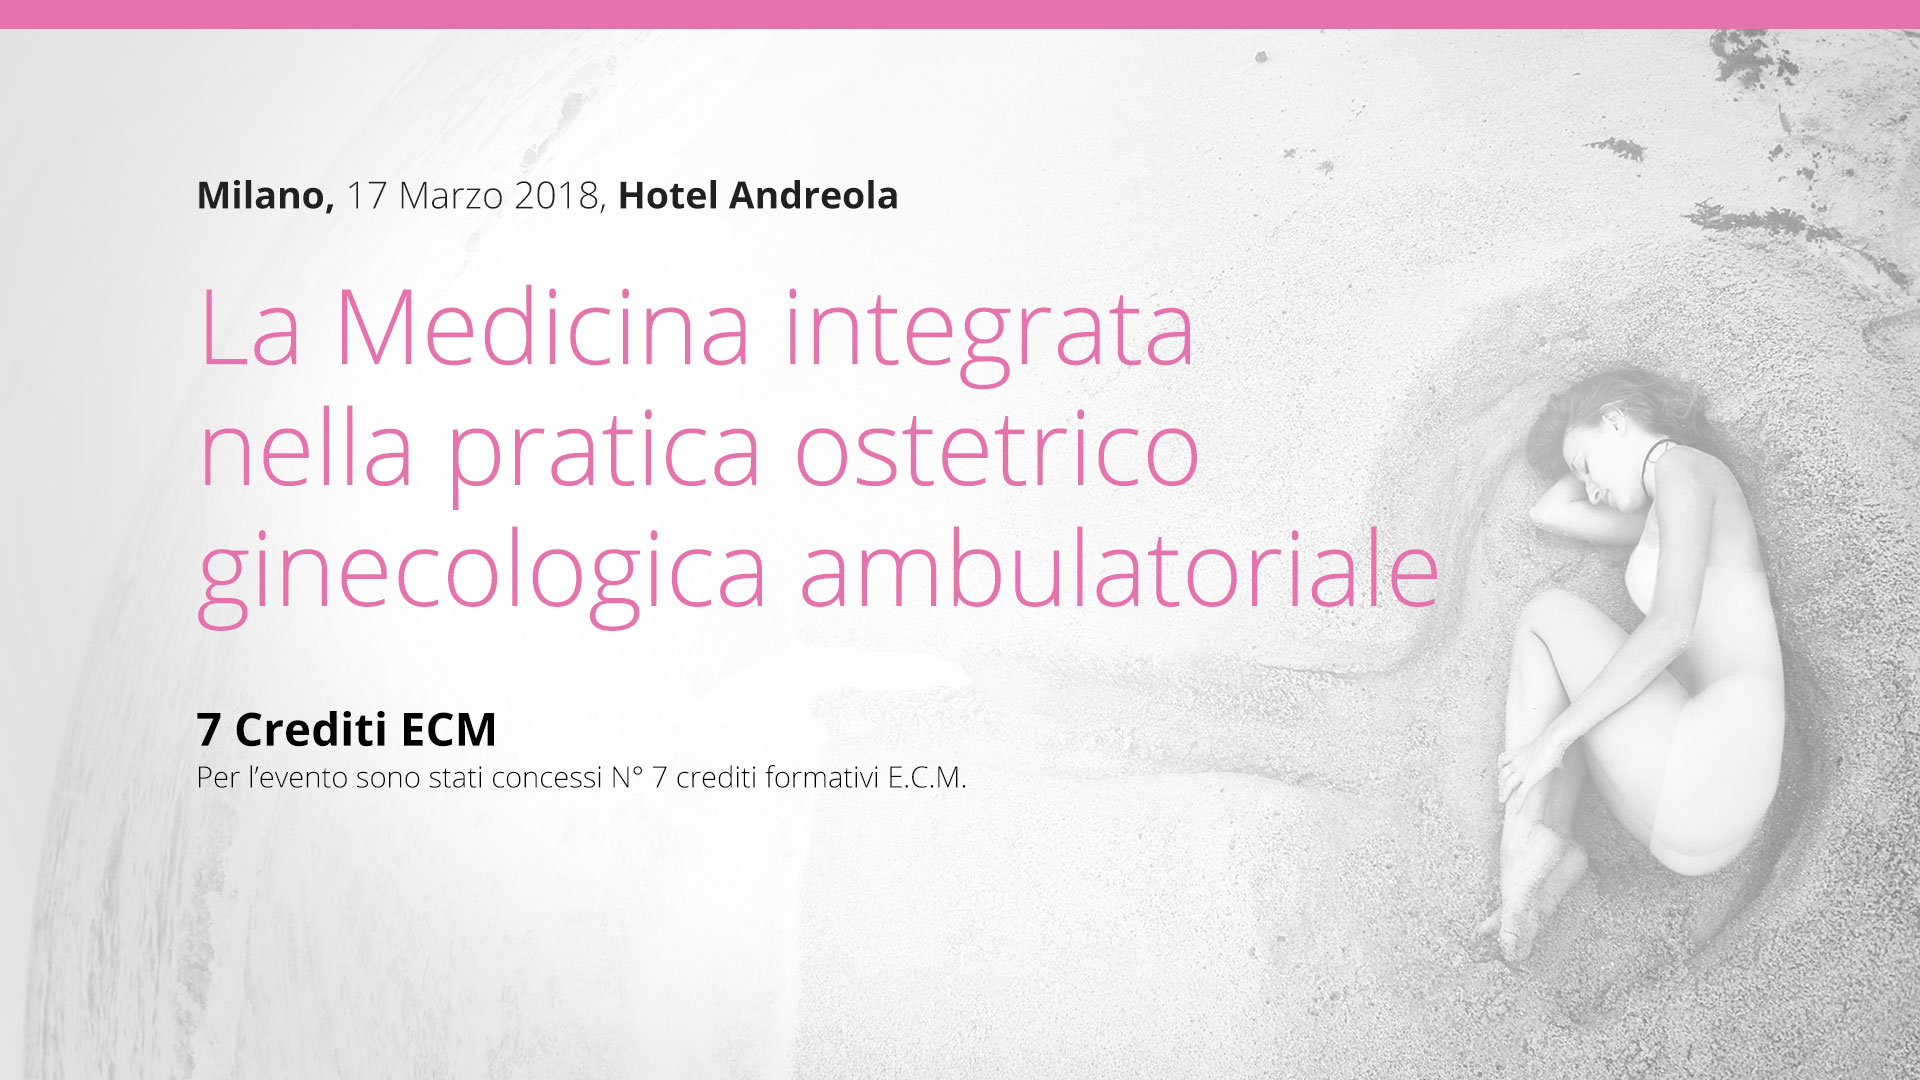 Milano, 17 Marzo: La Medicina integrata nella pratica ostetrico-ginecologica ambulatoriale